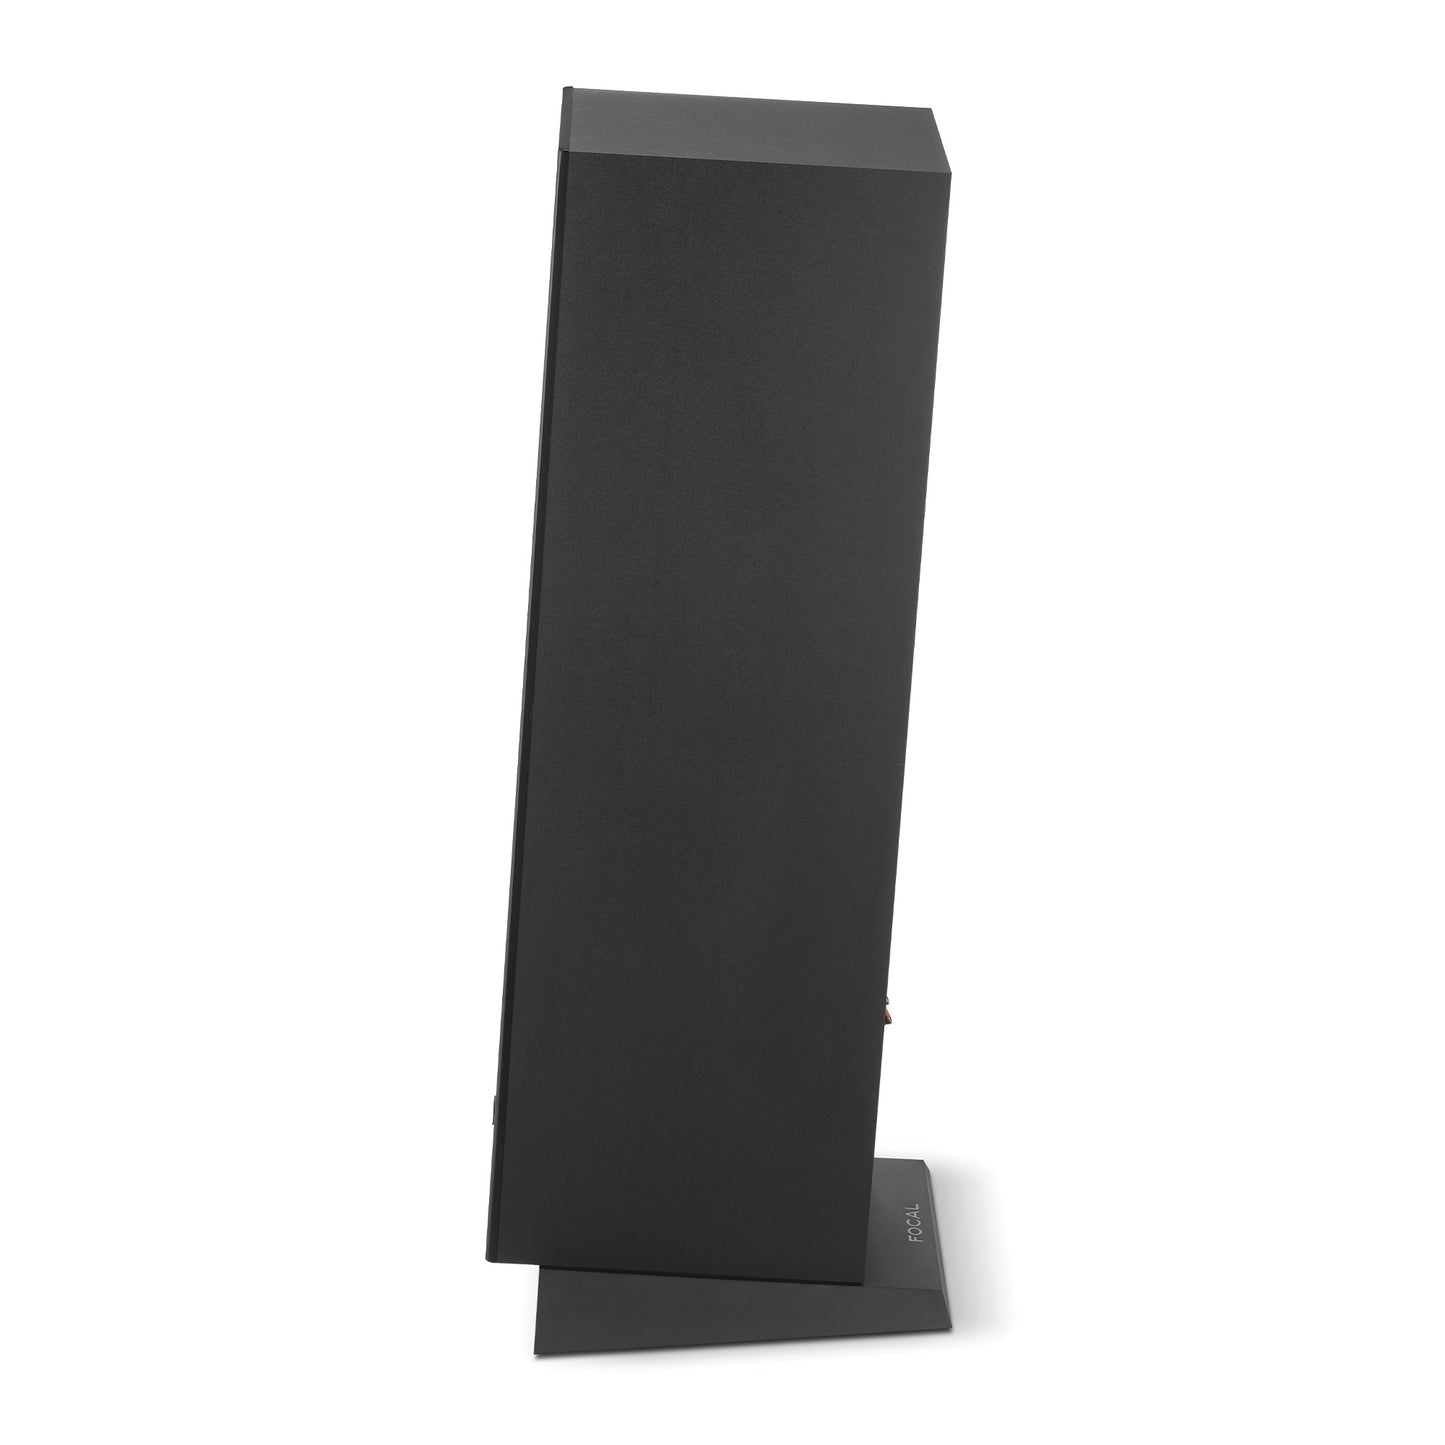 Focal Theva N°2 Floorstanding Speaker (Single)